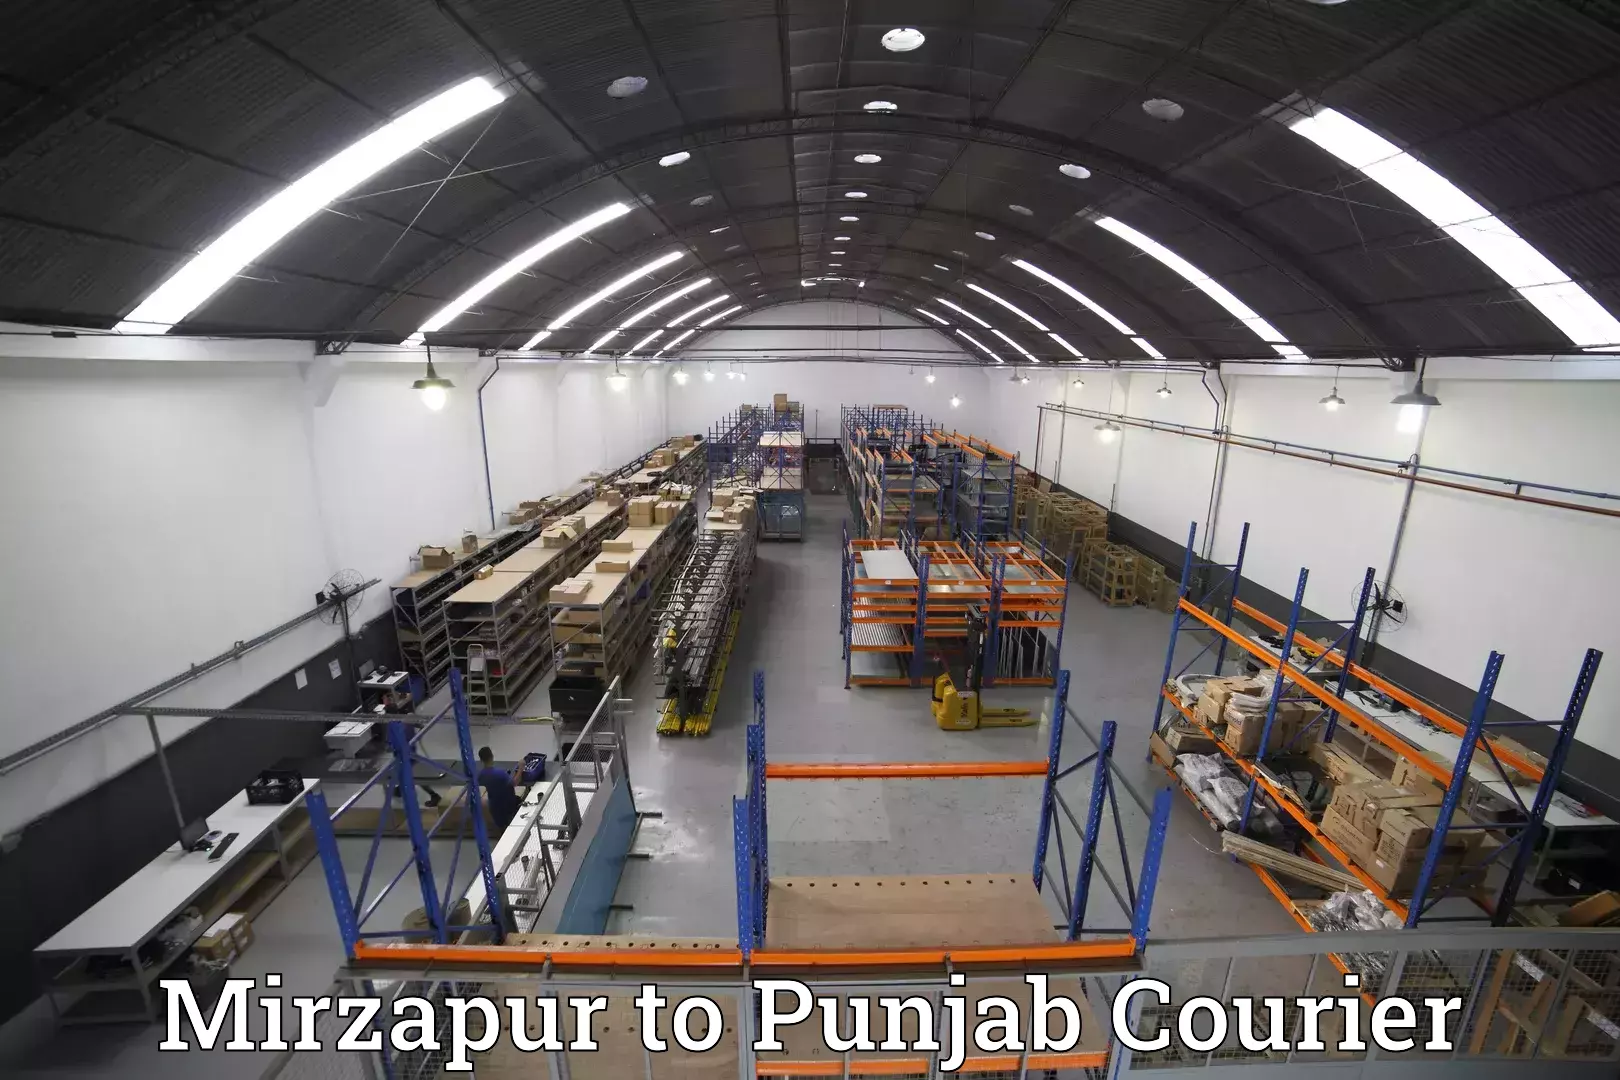 Baggage transport professionals Mirzapur to Punjab